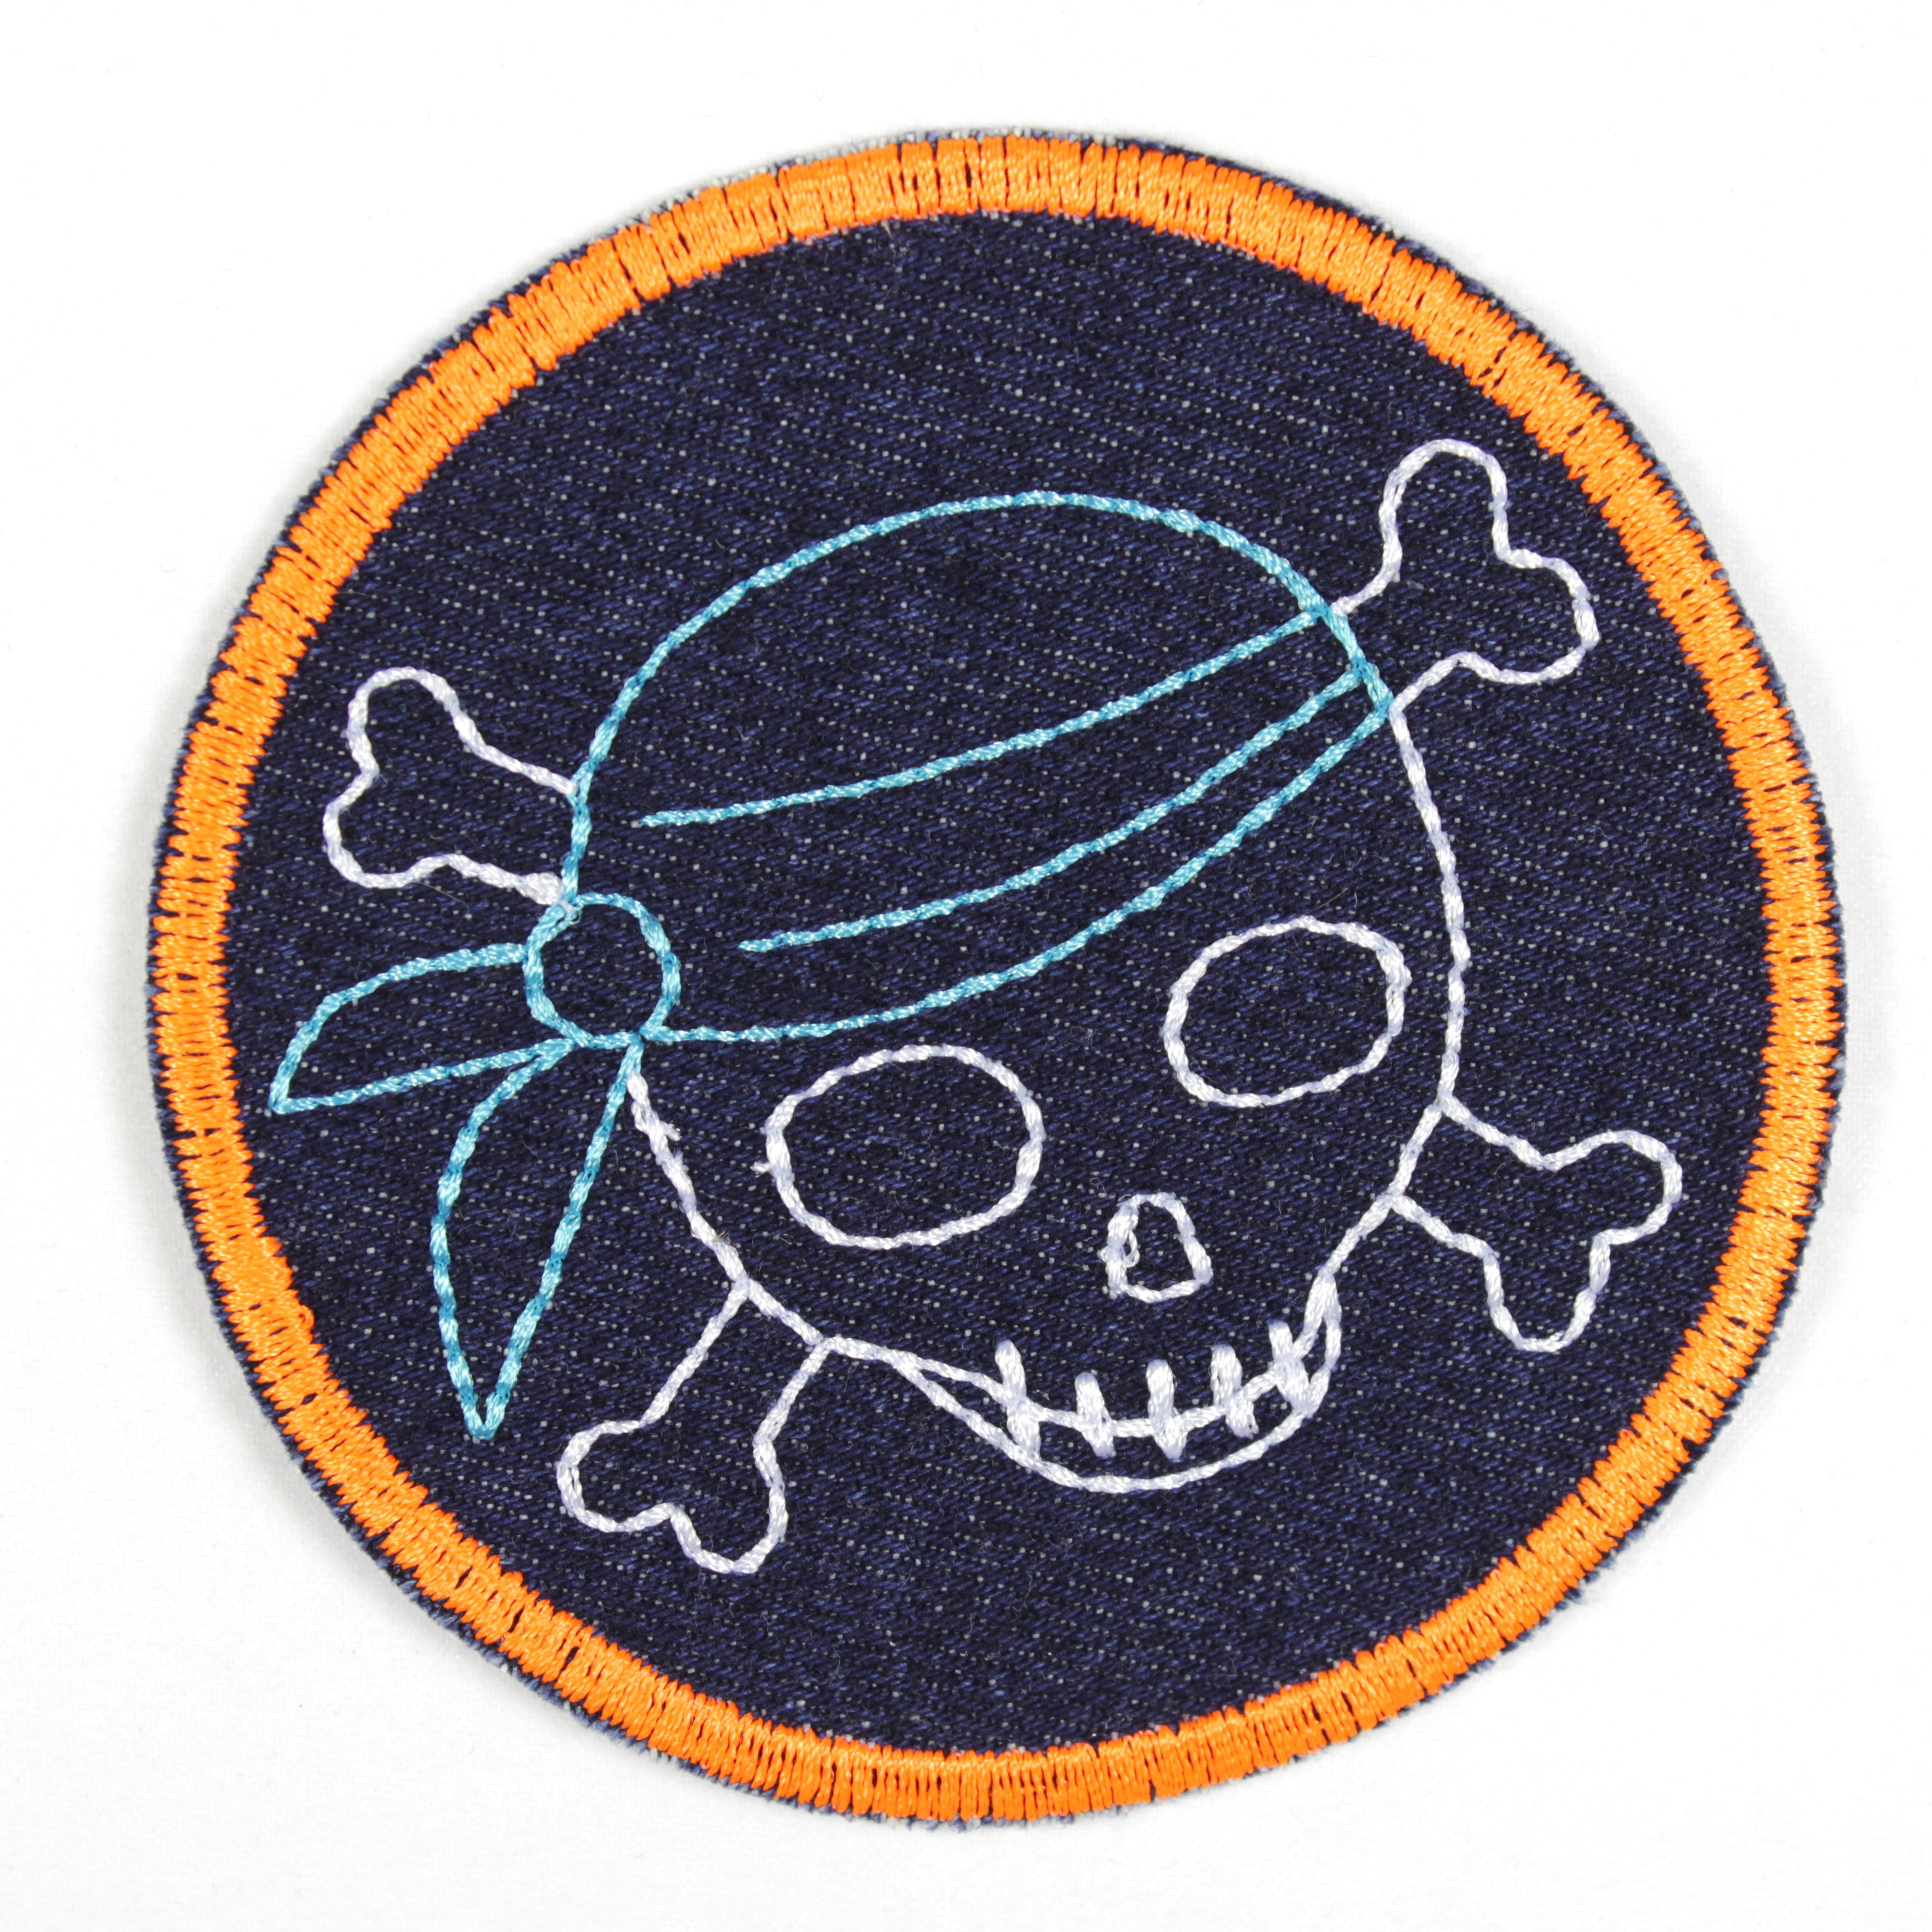 Bügelbild Pirat mit blauem Tuch und neonorangenen Rand als Applikation zum aufbügeln oder Aufnäher und Accessoires